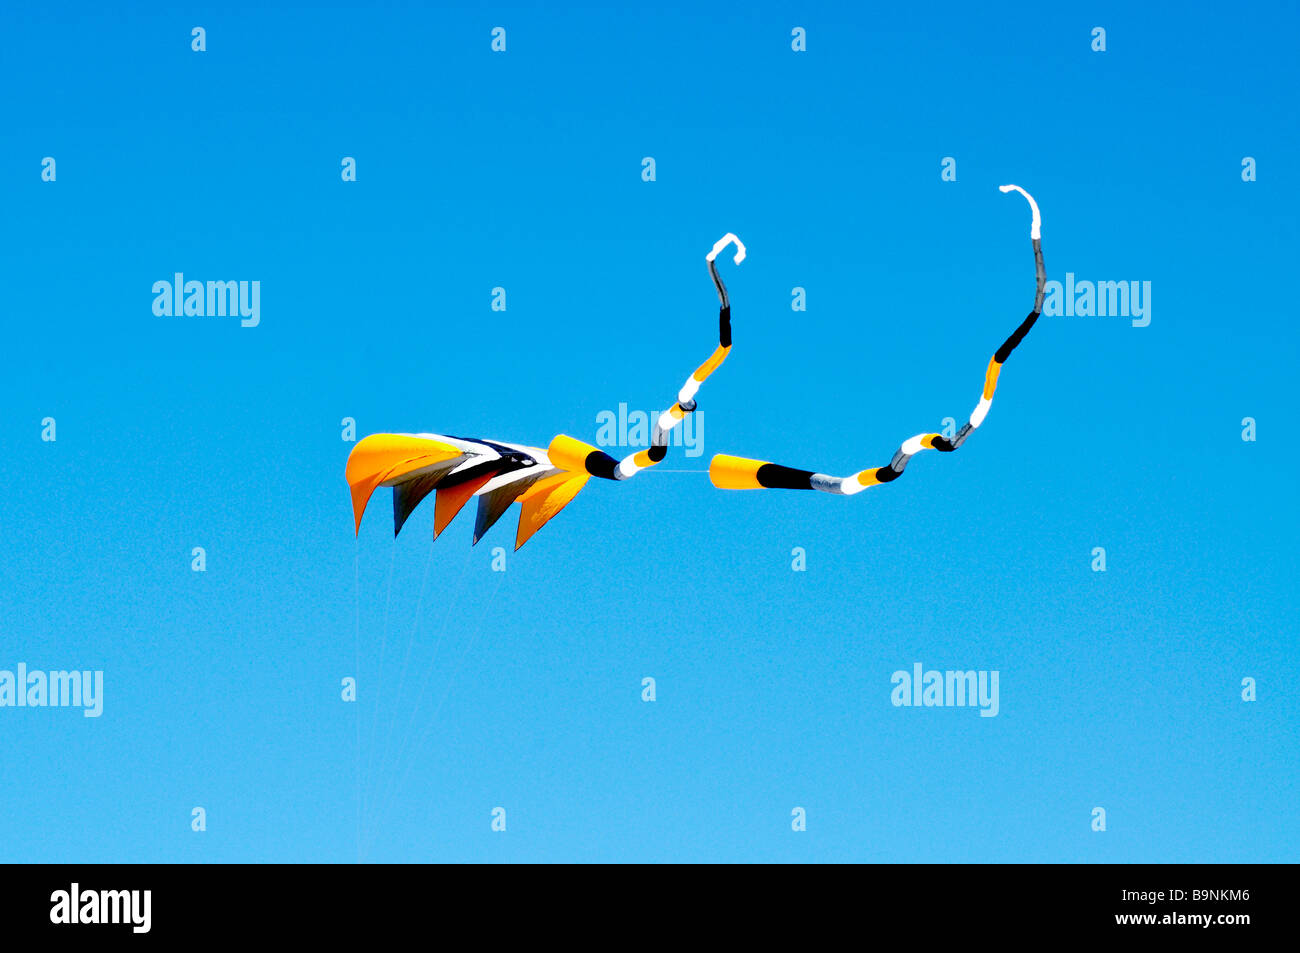 Grand Cerf-volant luge [rayé] avec des rubans voler contre ciel bleu clair Banque D'Images